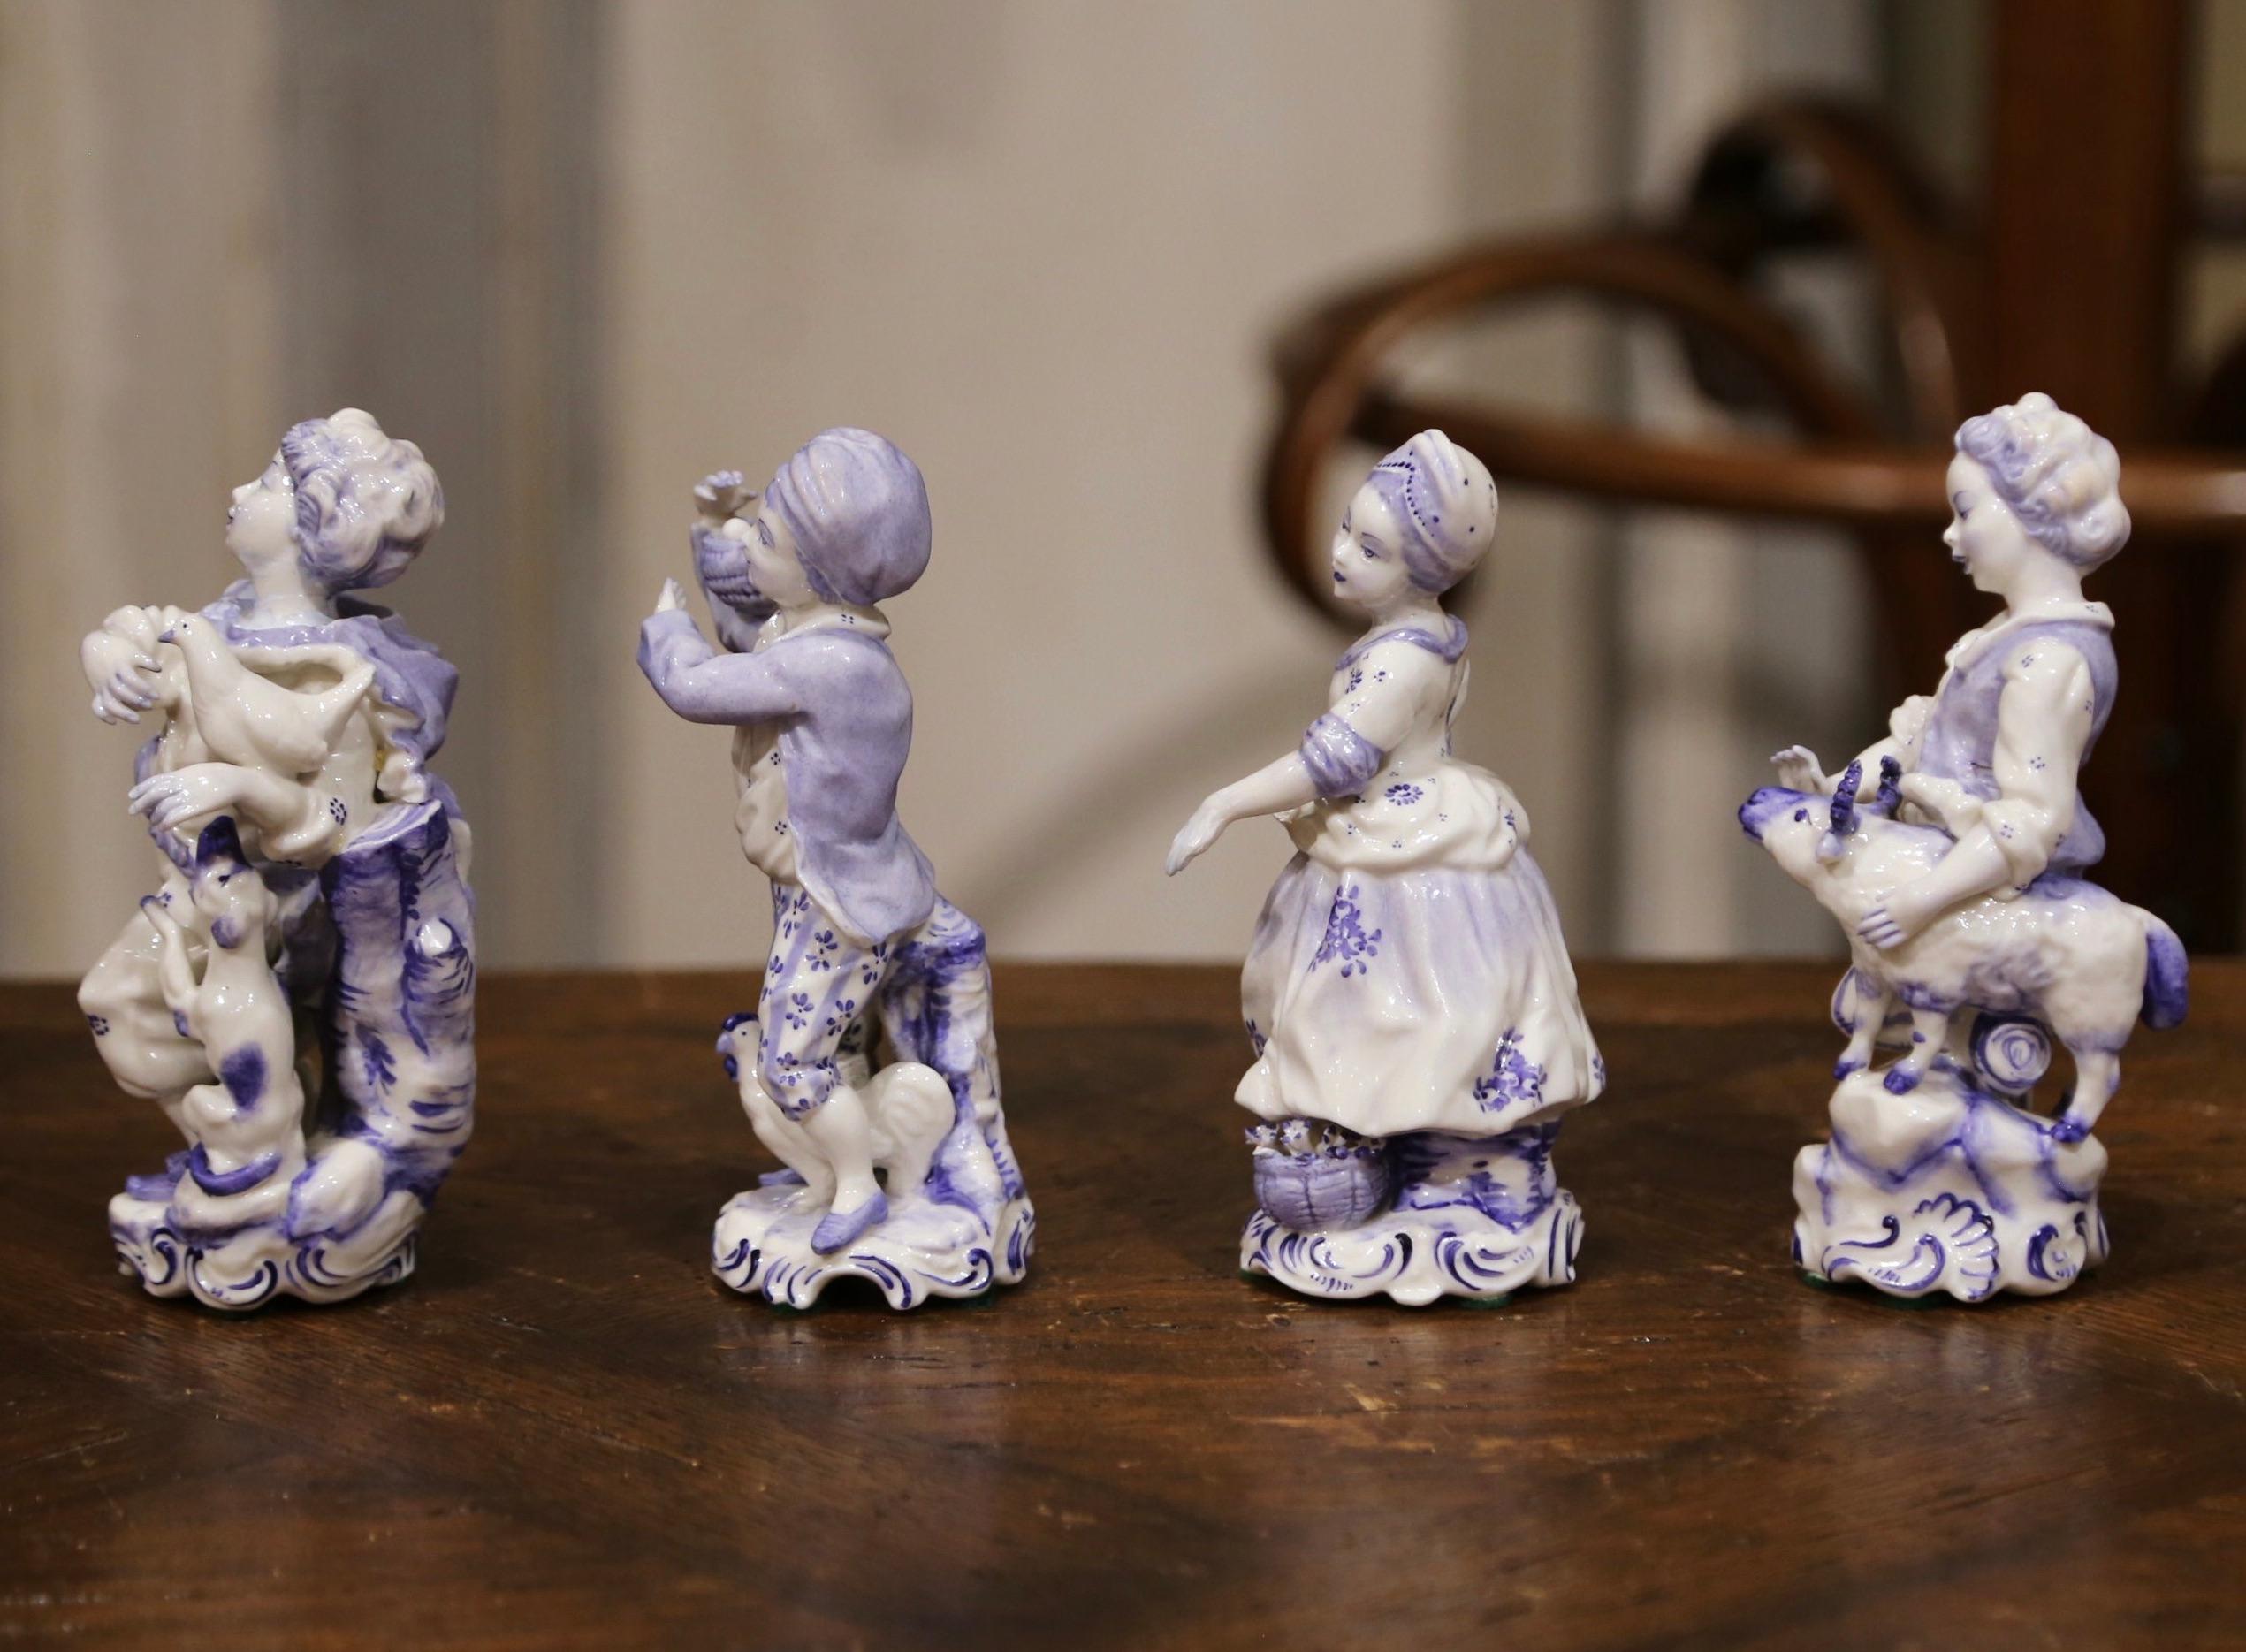 Die vier um 1920 in Holland gefertigten Fayence-Skulpturen stellen bäuerliche junge Schönheiten in traditioneller Kleidung dar. Eine Frau hat eine Ente und einen Hund, eine andere hält Eier mit Hühnern, eine andere eine Ziege und die letzte einen